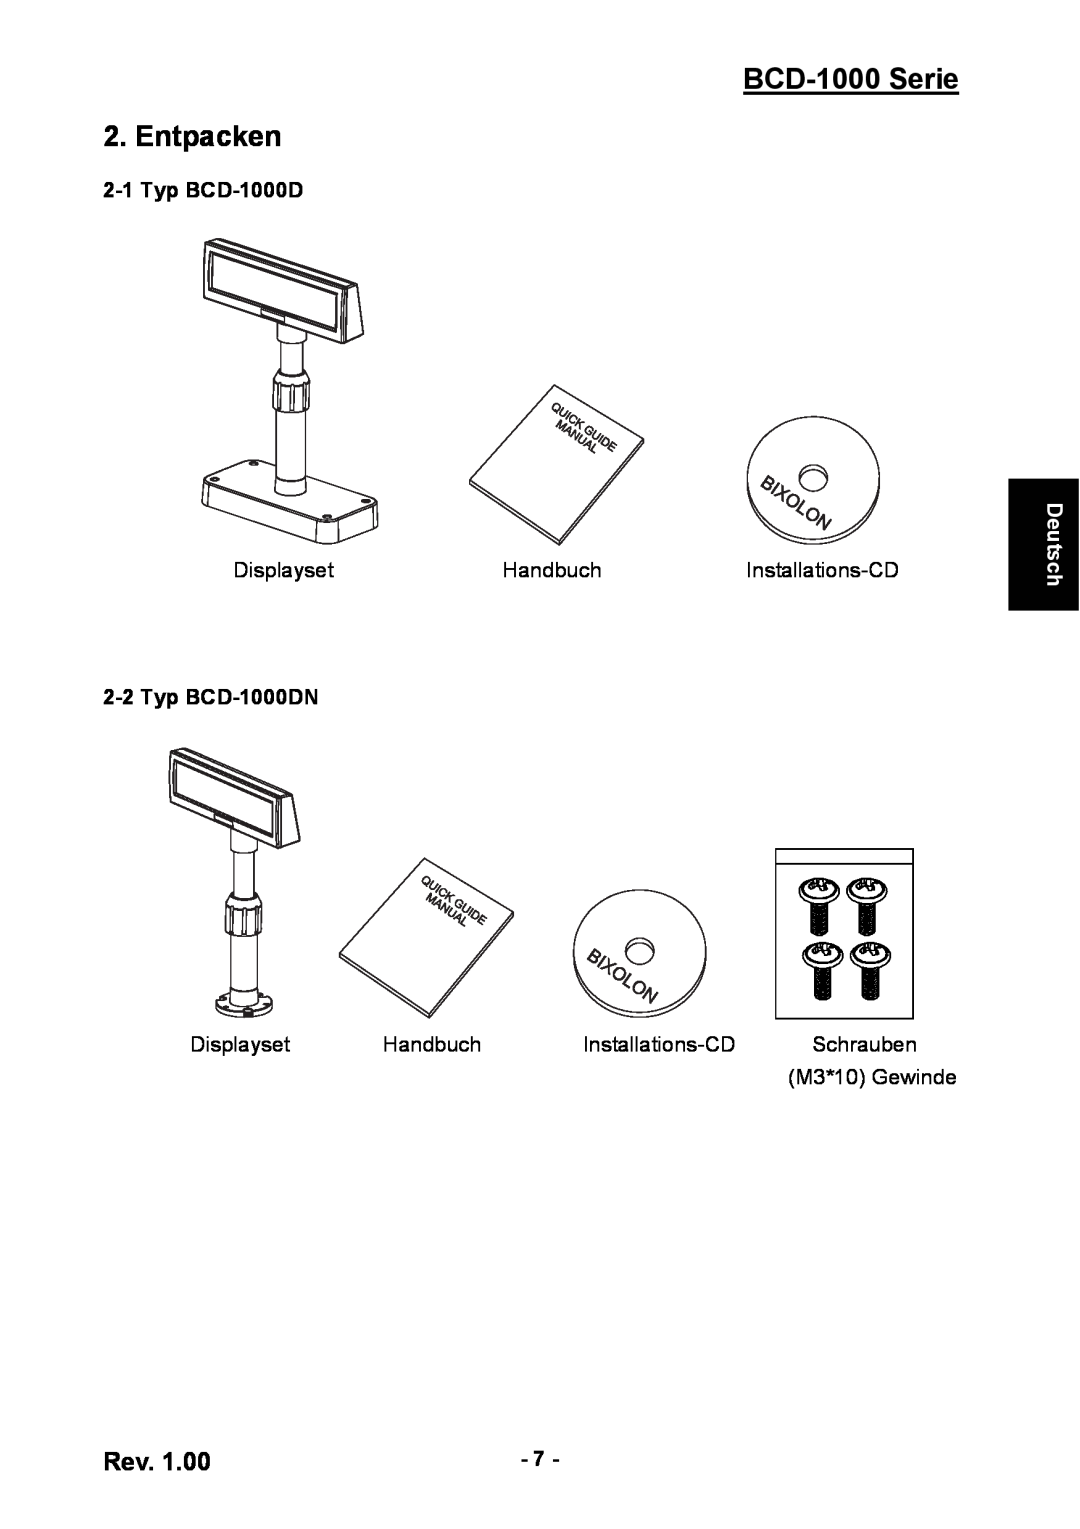 Samsung user manual BCD-1000 Serie 2. Entpacken, Typ BCD-1000DN, Deutsch 